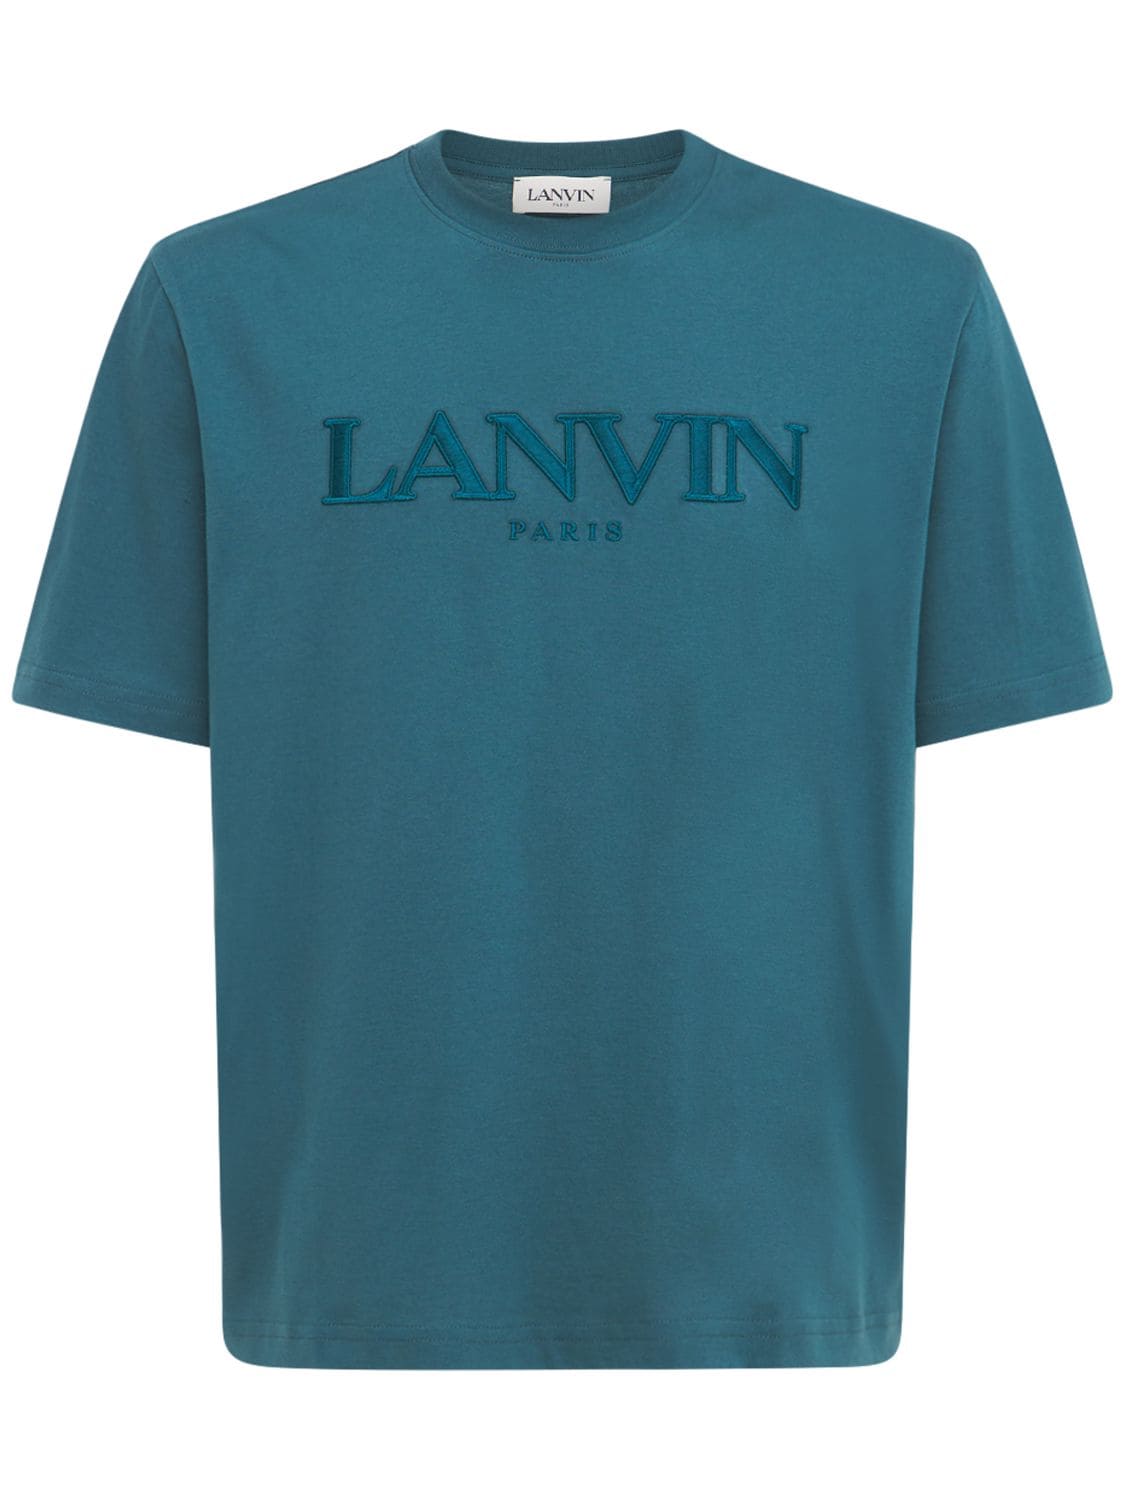 LANVIN LOGO刺绣棉质T恤,74IG0D001-MTK1